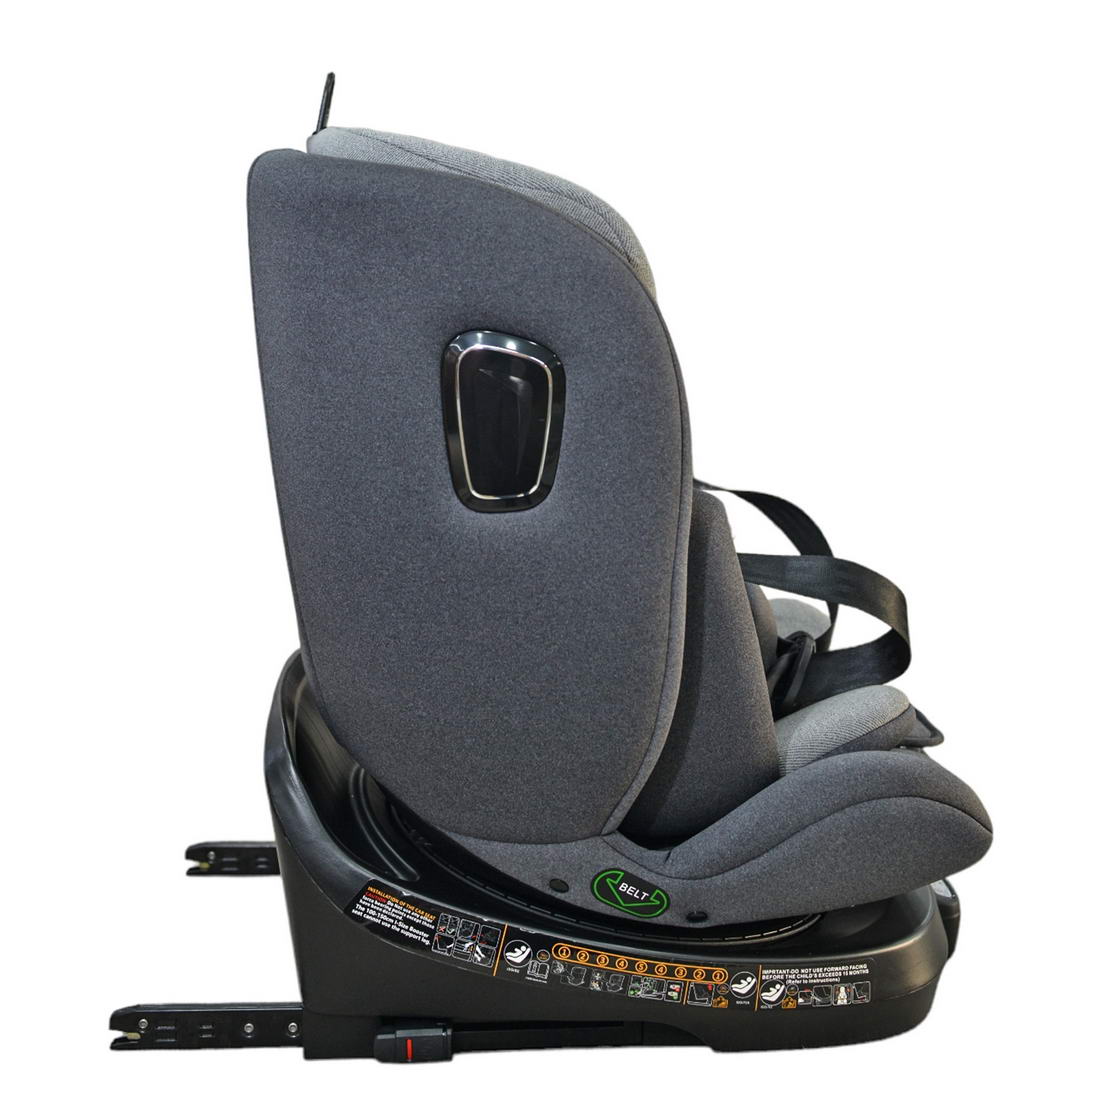 Βρεφικό κάθισμα αυτοκινήτου 0-36 kg isofix 360° μοιρών i-size 40-150cm WD034 Grey